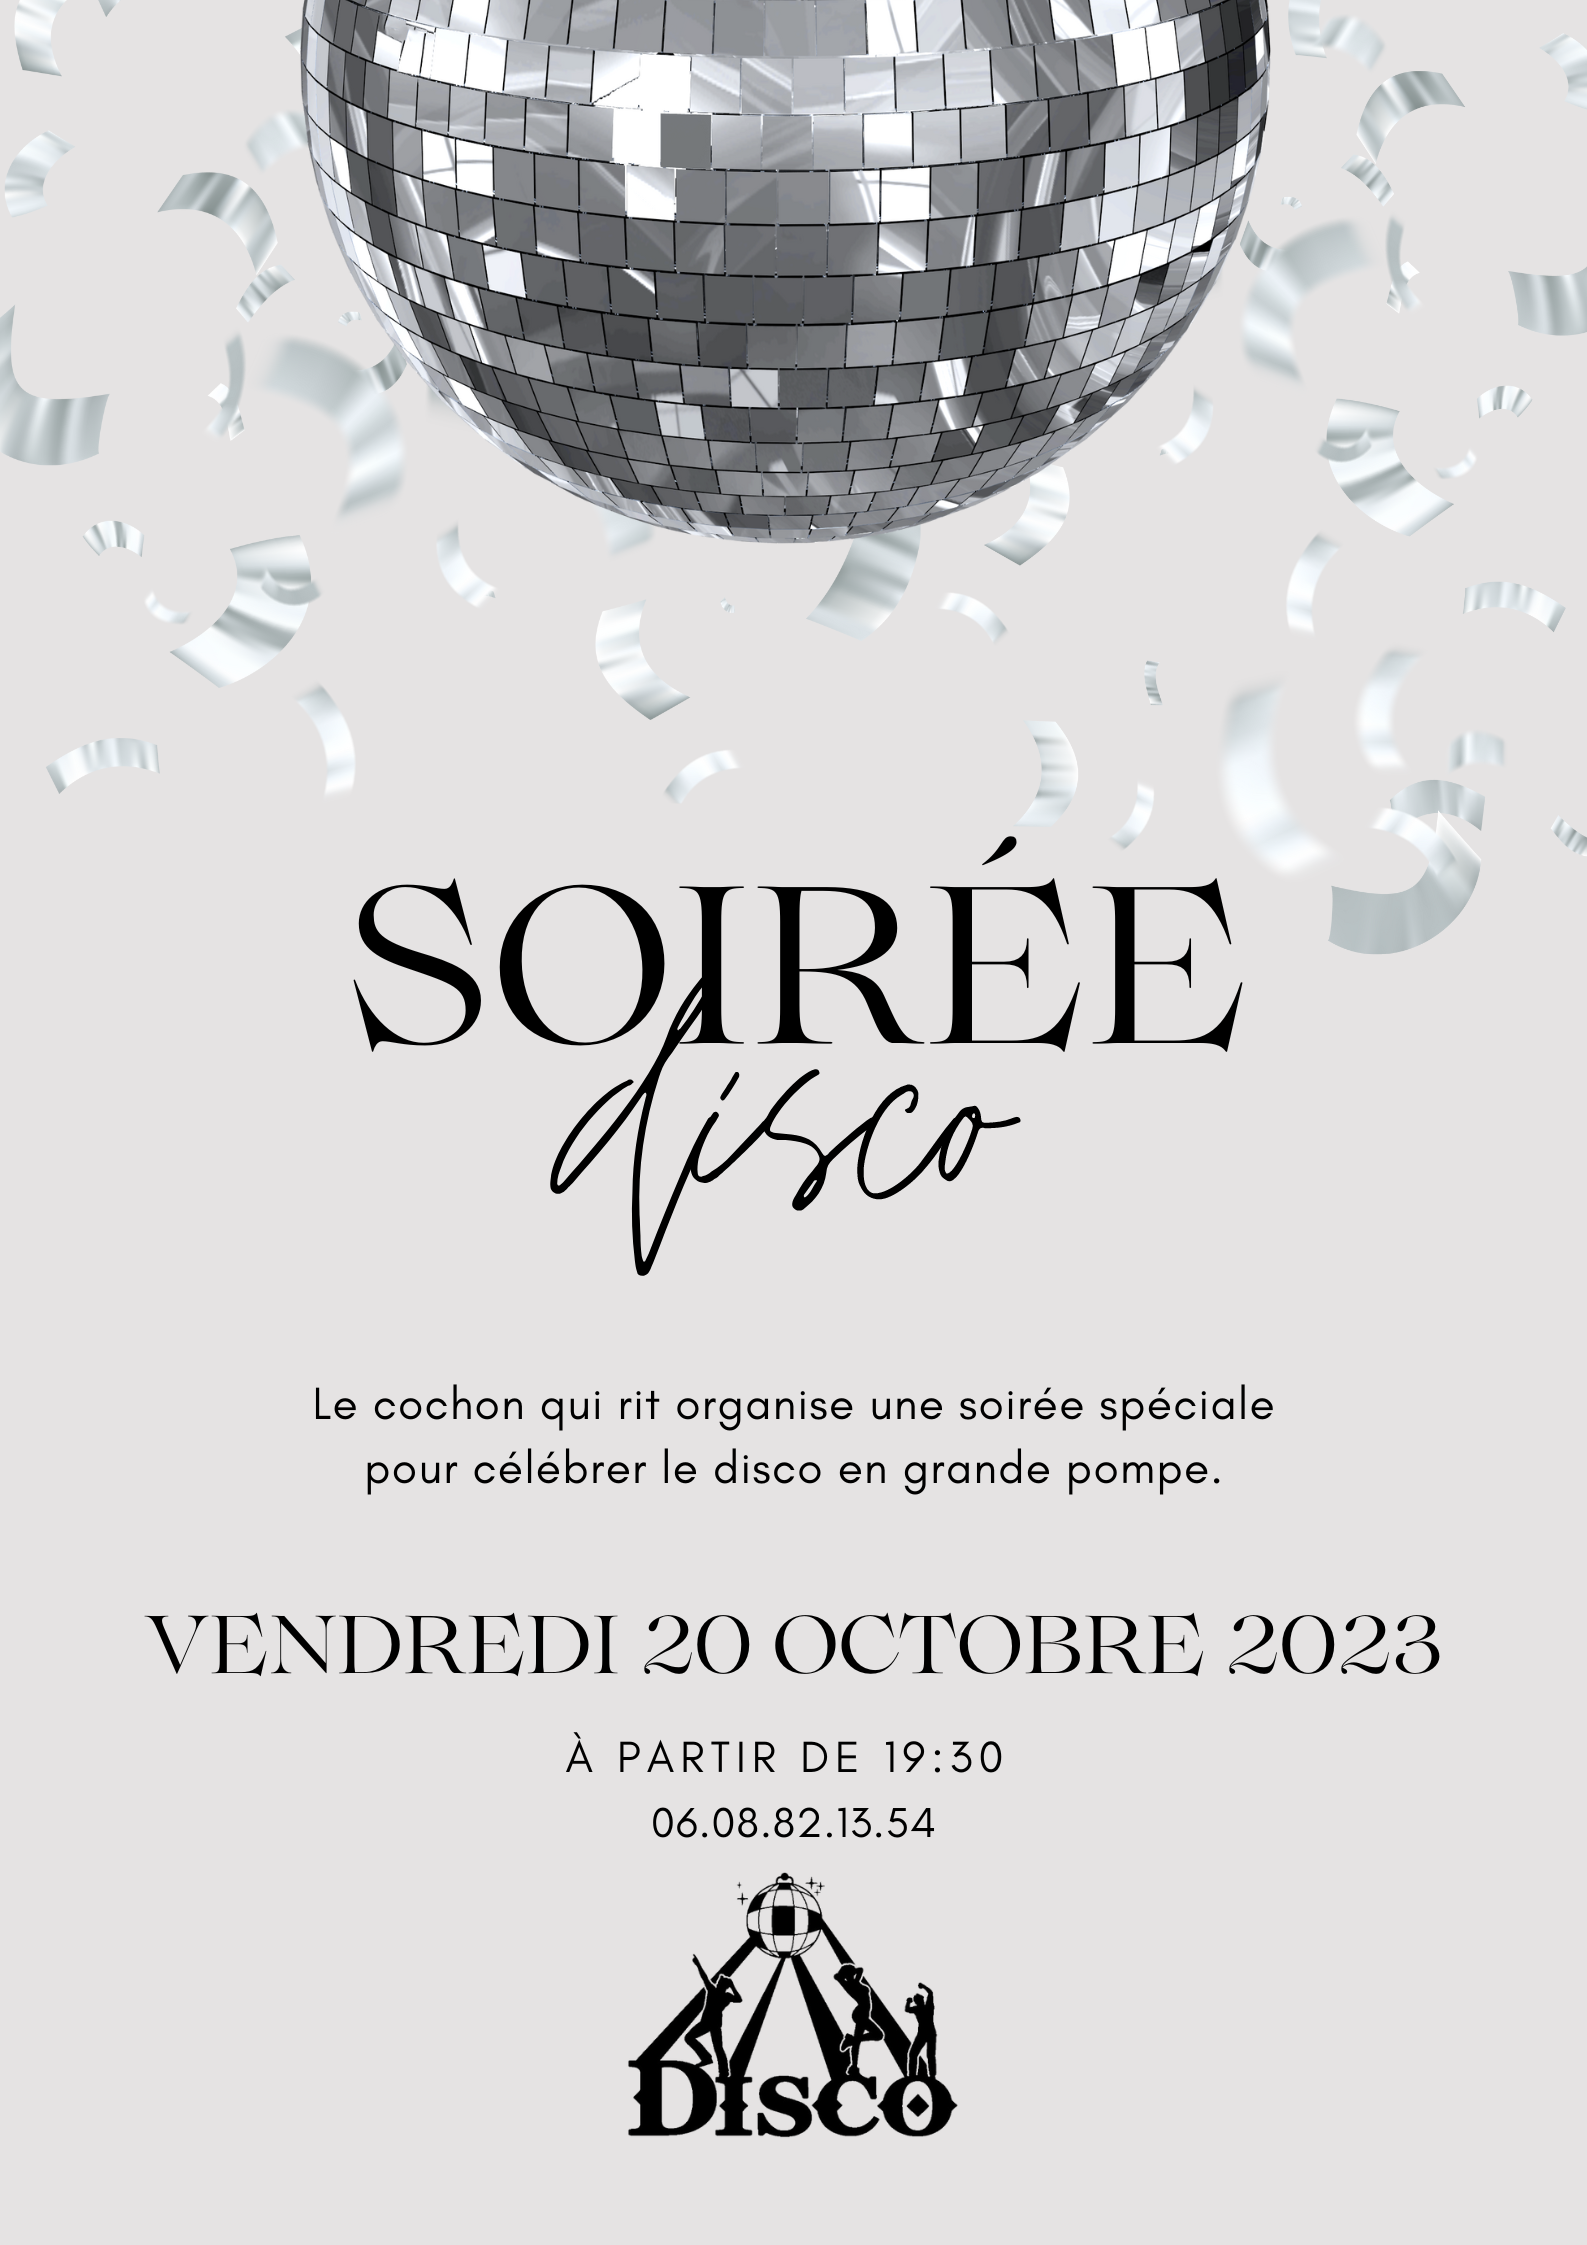 SOIRÉE DISCO / VENDREDI 20 OCTOBRE 2023 / Menu à 29,50€